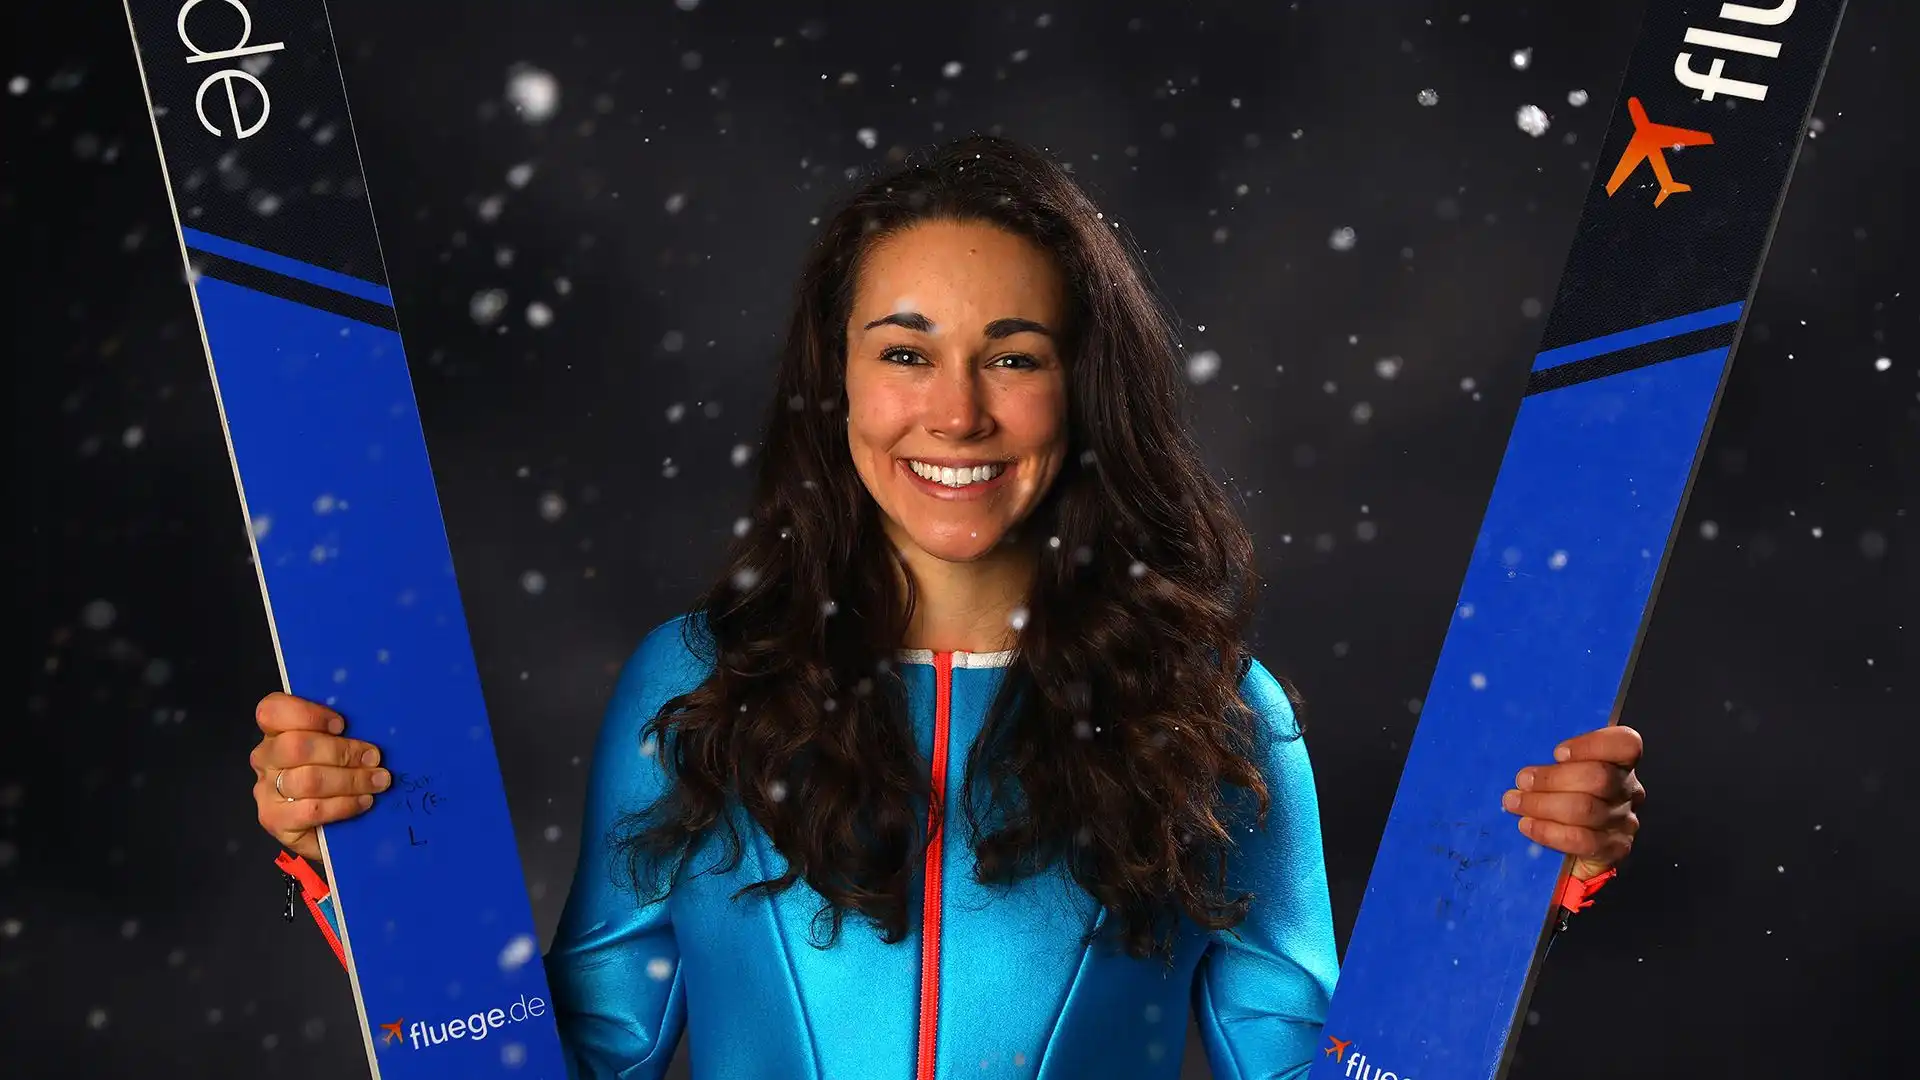 Sarah ha vinto la prima edizione della Coppa del Mondo di salto con gli sci femminile nel 2012.